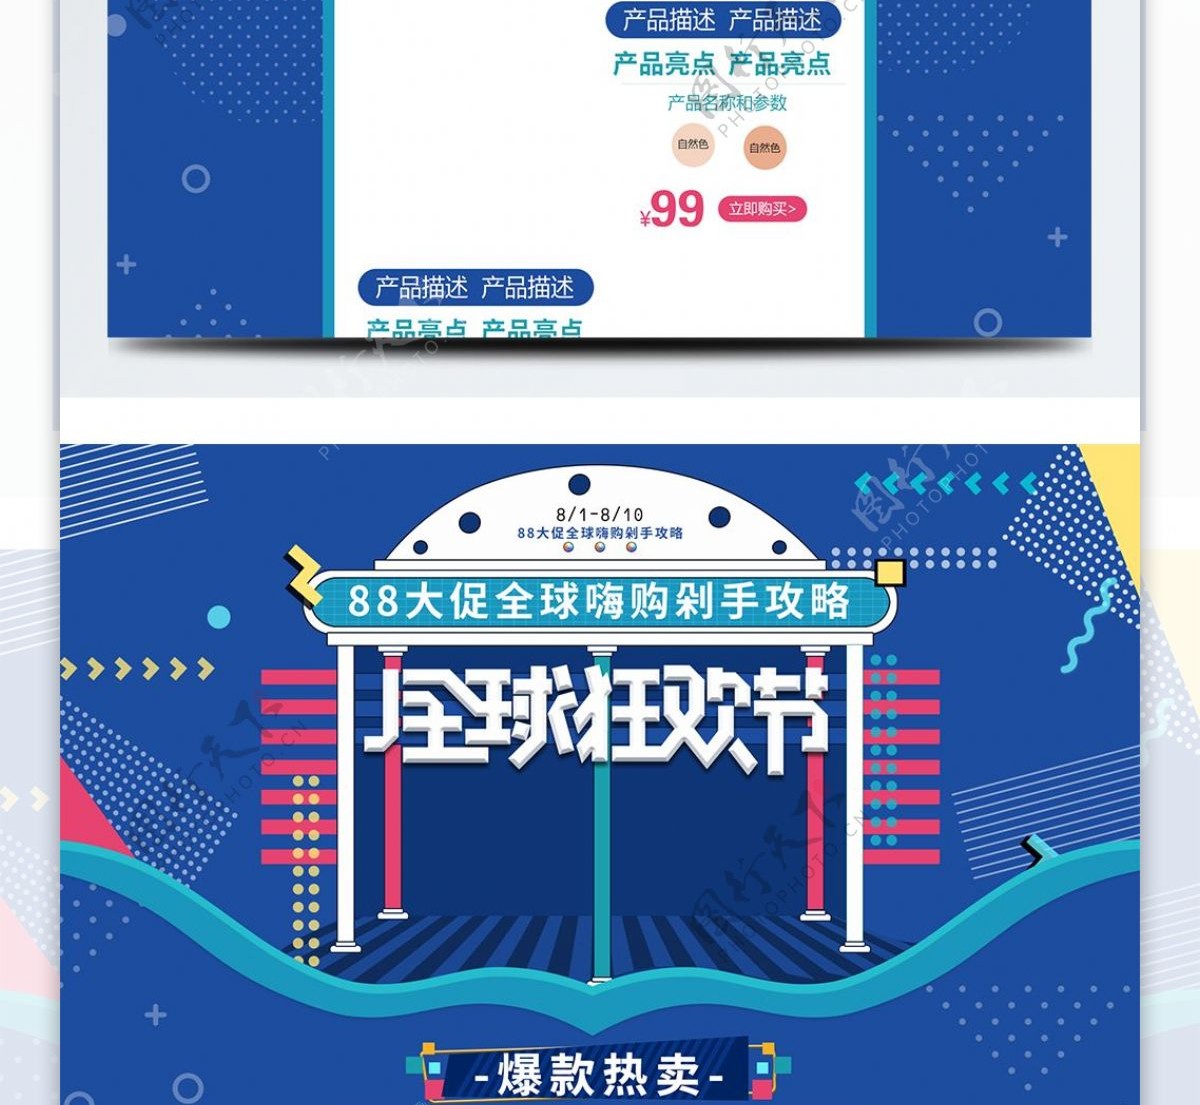 蓝色孟菲斯电商淘宝88全球狂欢节首页模板